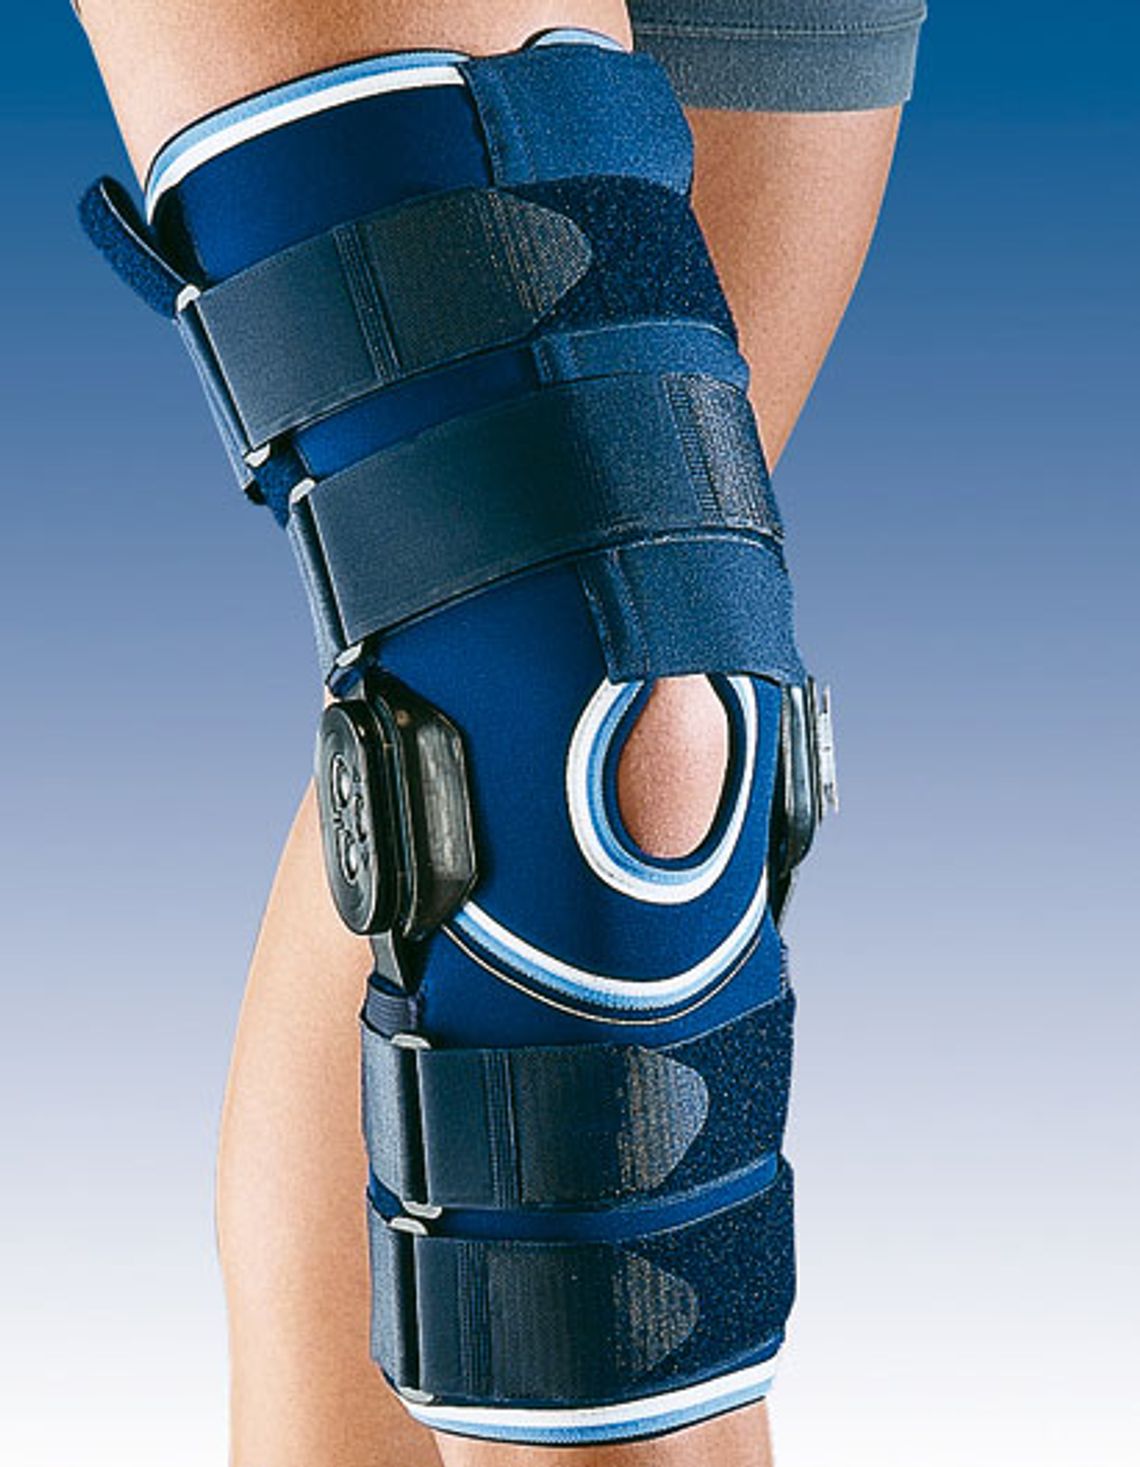 Orteza stawu kolanowego z ruchomym stawem kolanowym z regulacją kąta zgięcia - Orliman